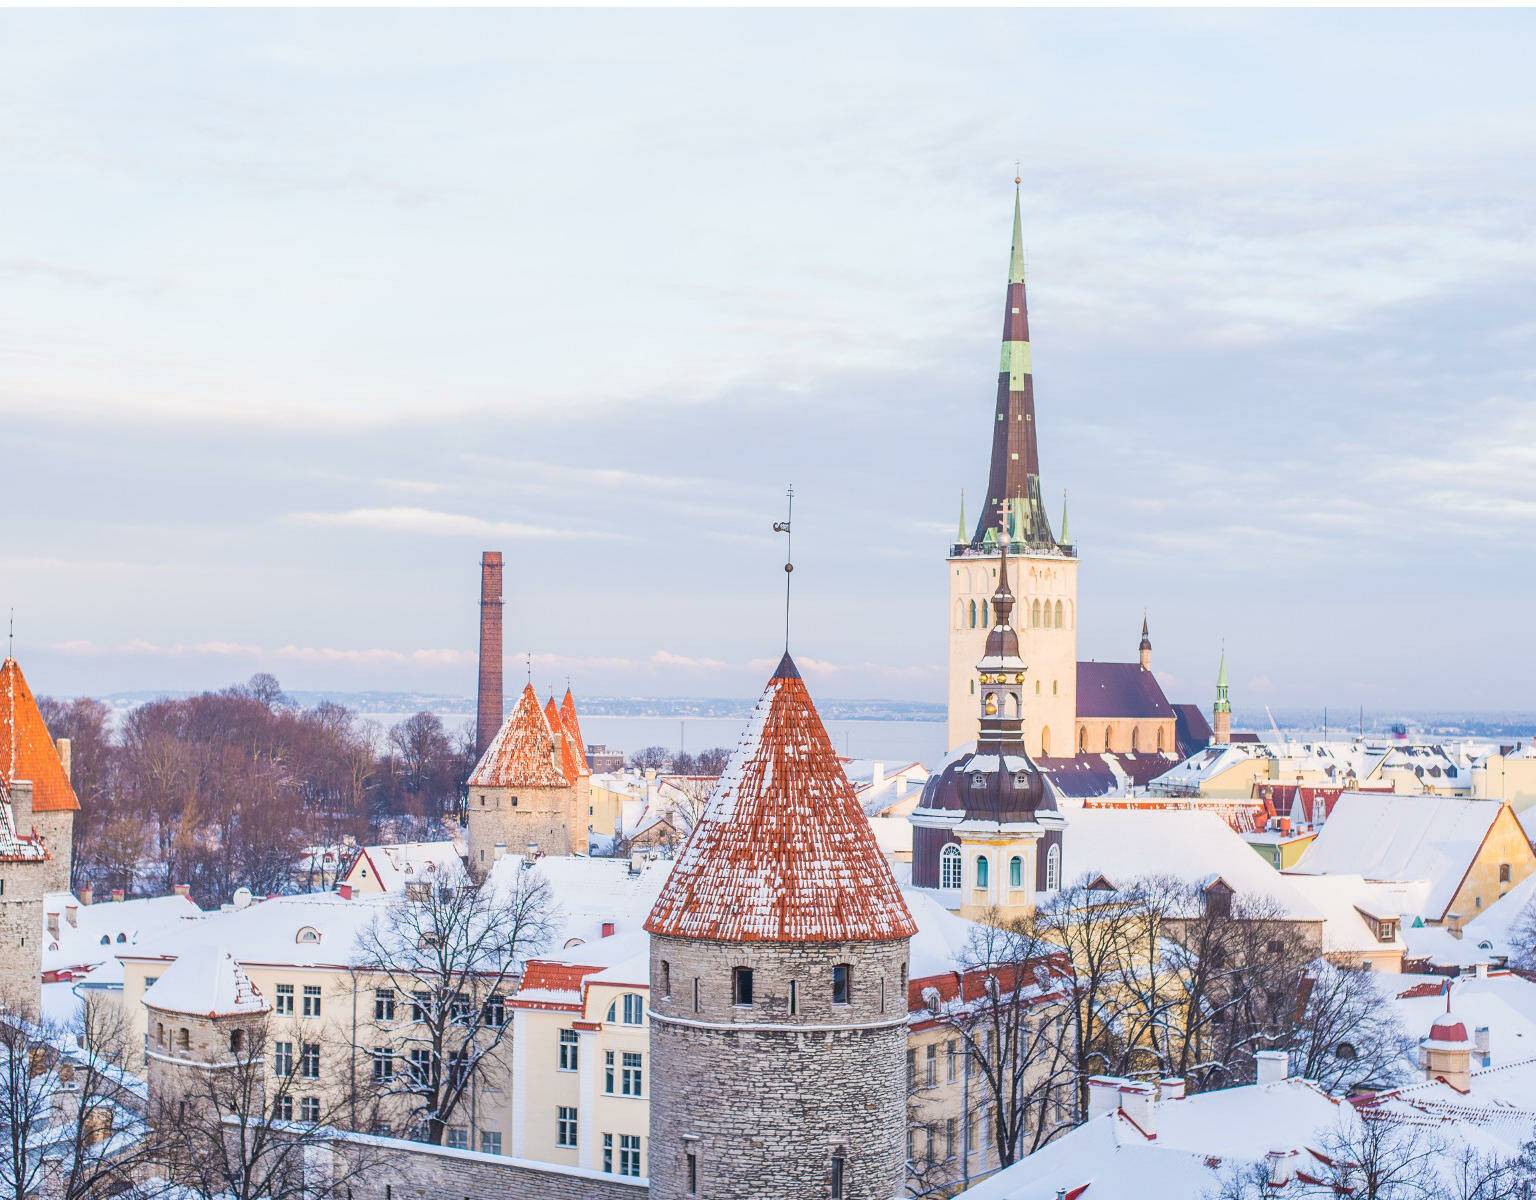 Auf den Spitzdächern von Tallinns Altstadt liegt Schnee.